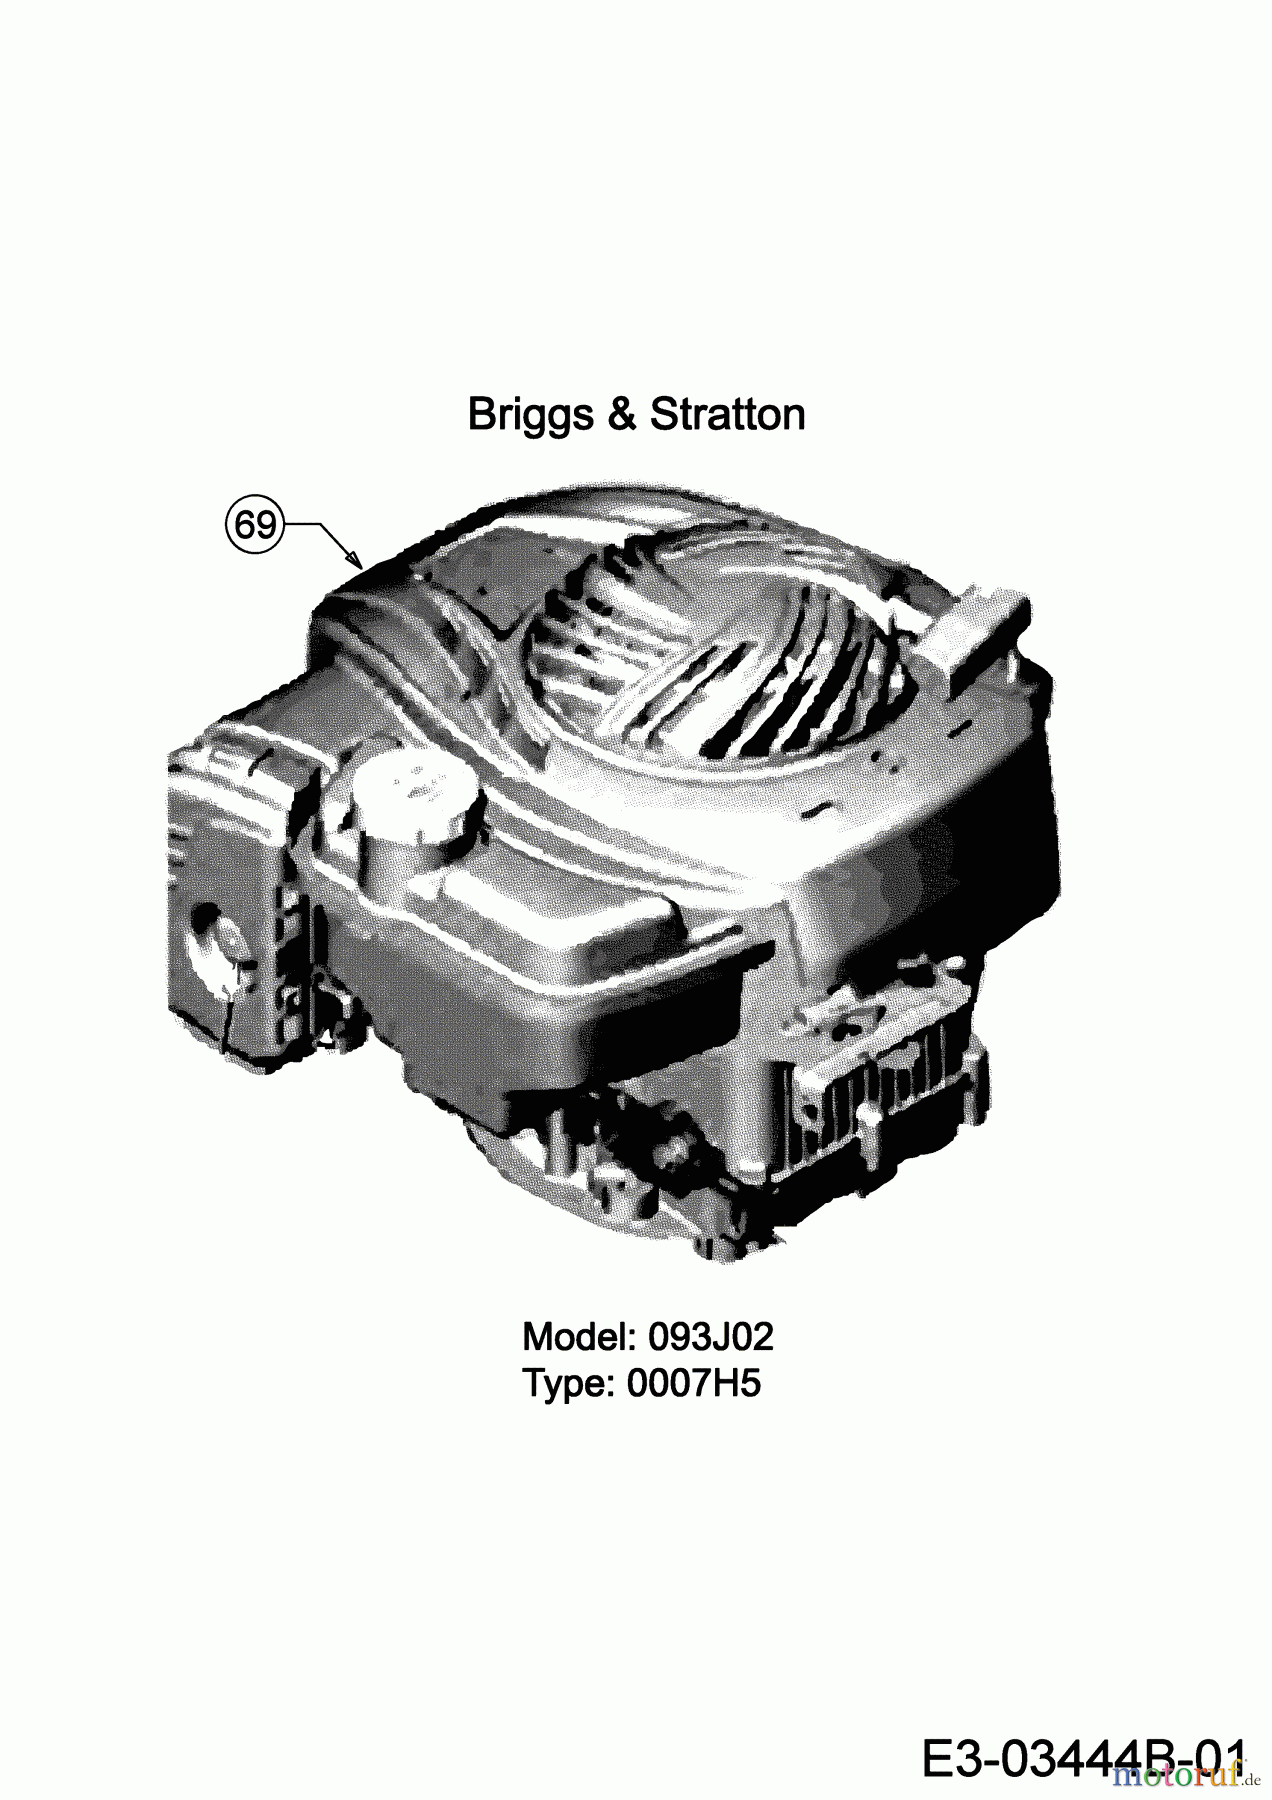  MTD Motormäher mit Antrieb 53 SPSBHW 12D-PH5L600 (2019) Motor Briggs & Stratton